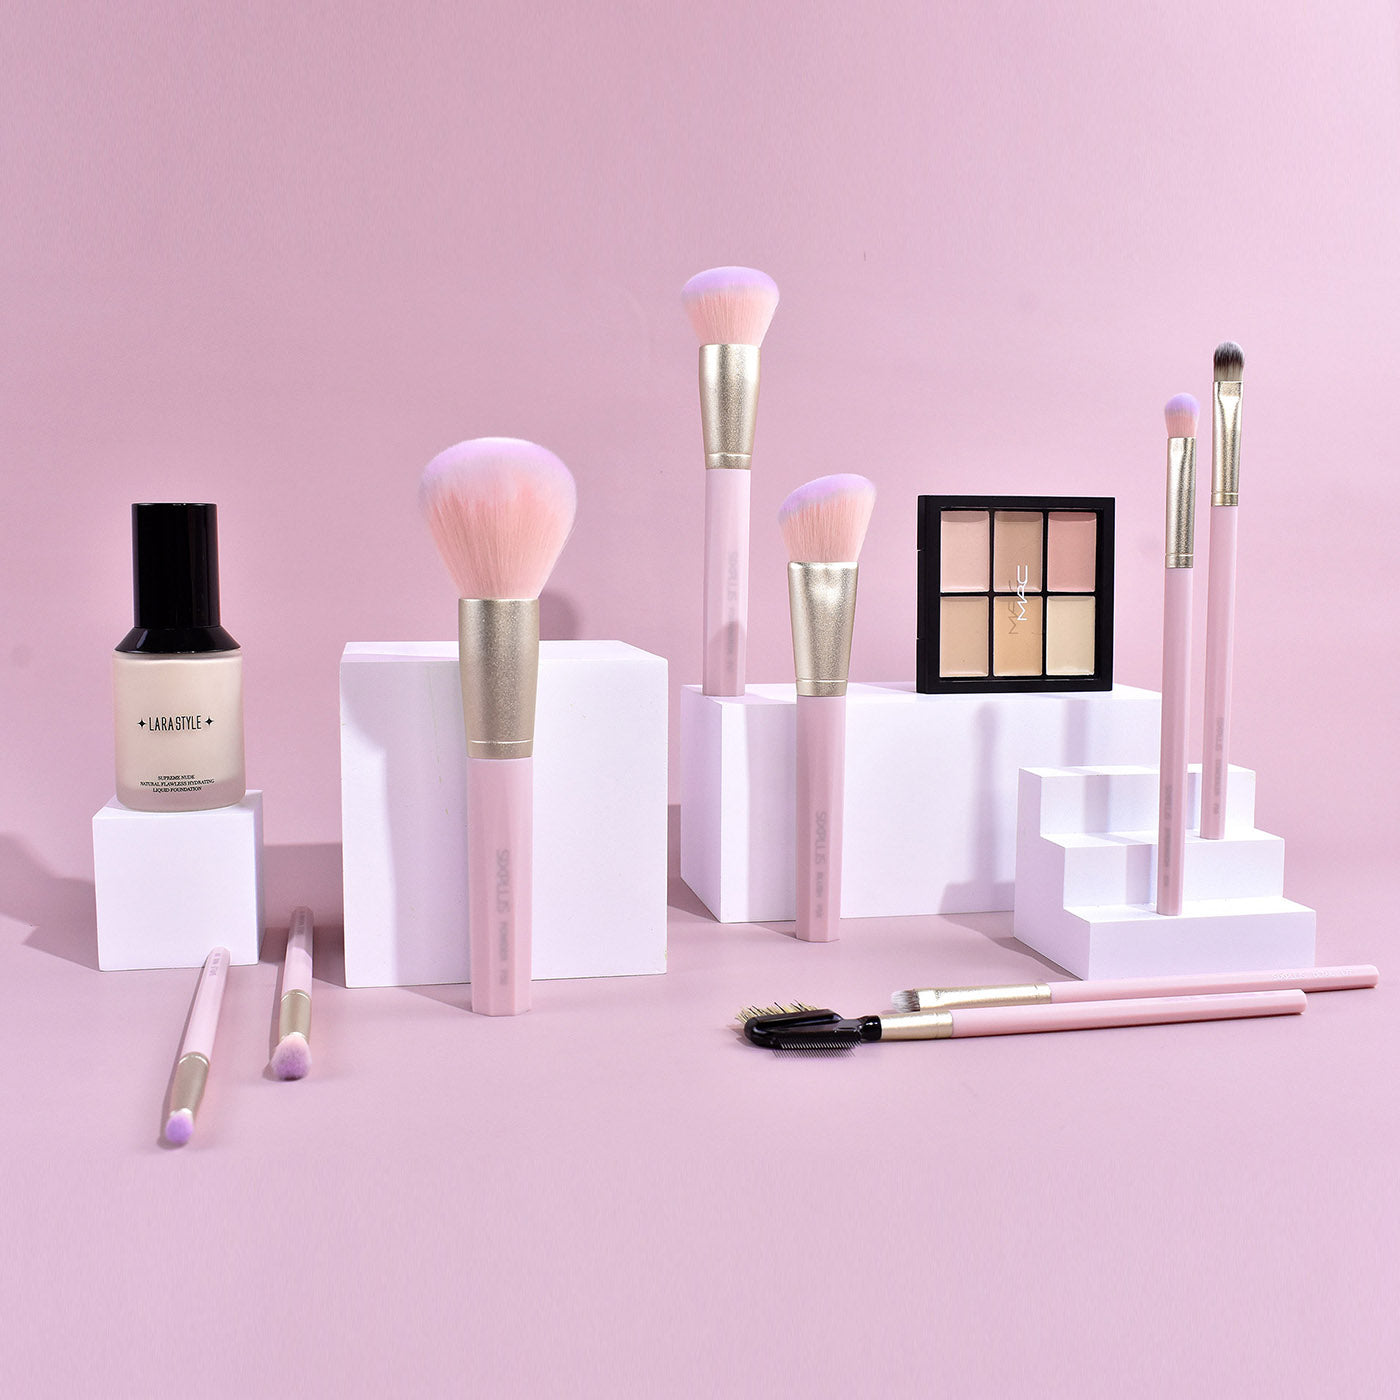 9pcs pink octagonal makeup brush set